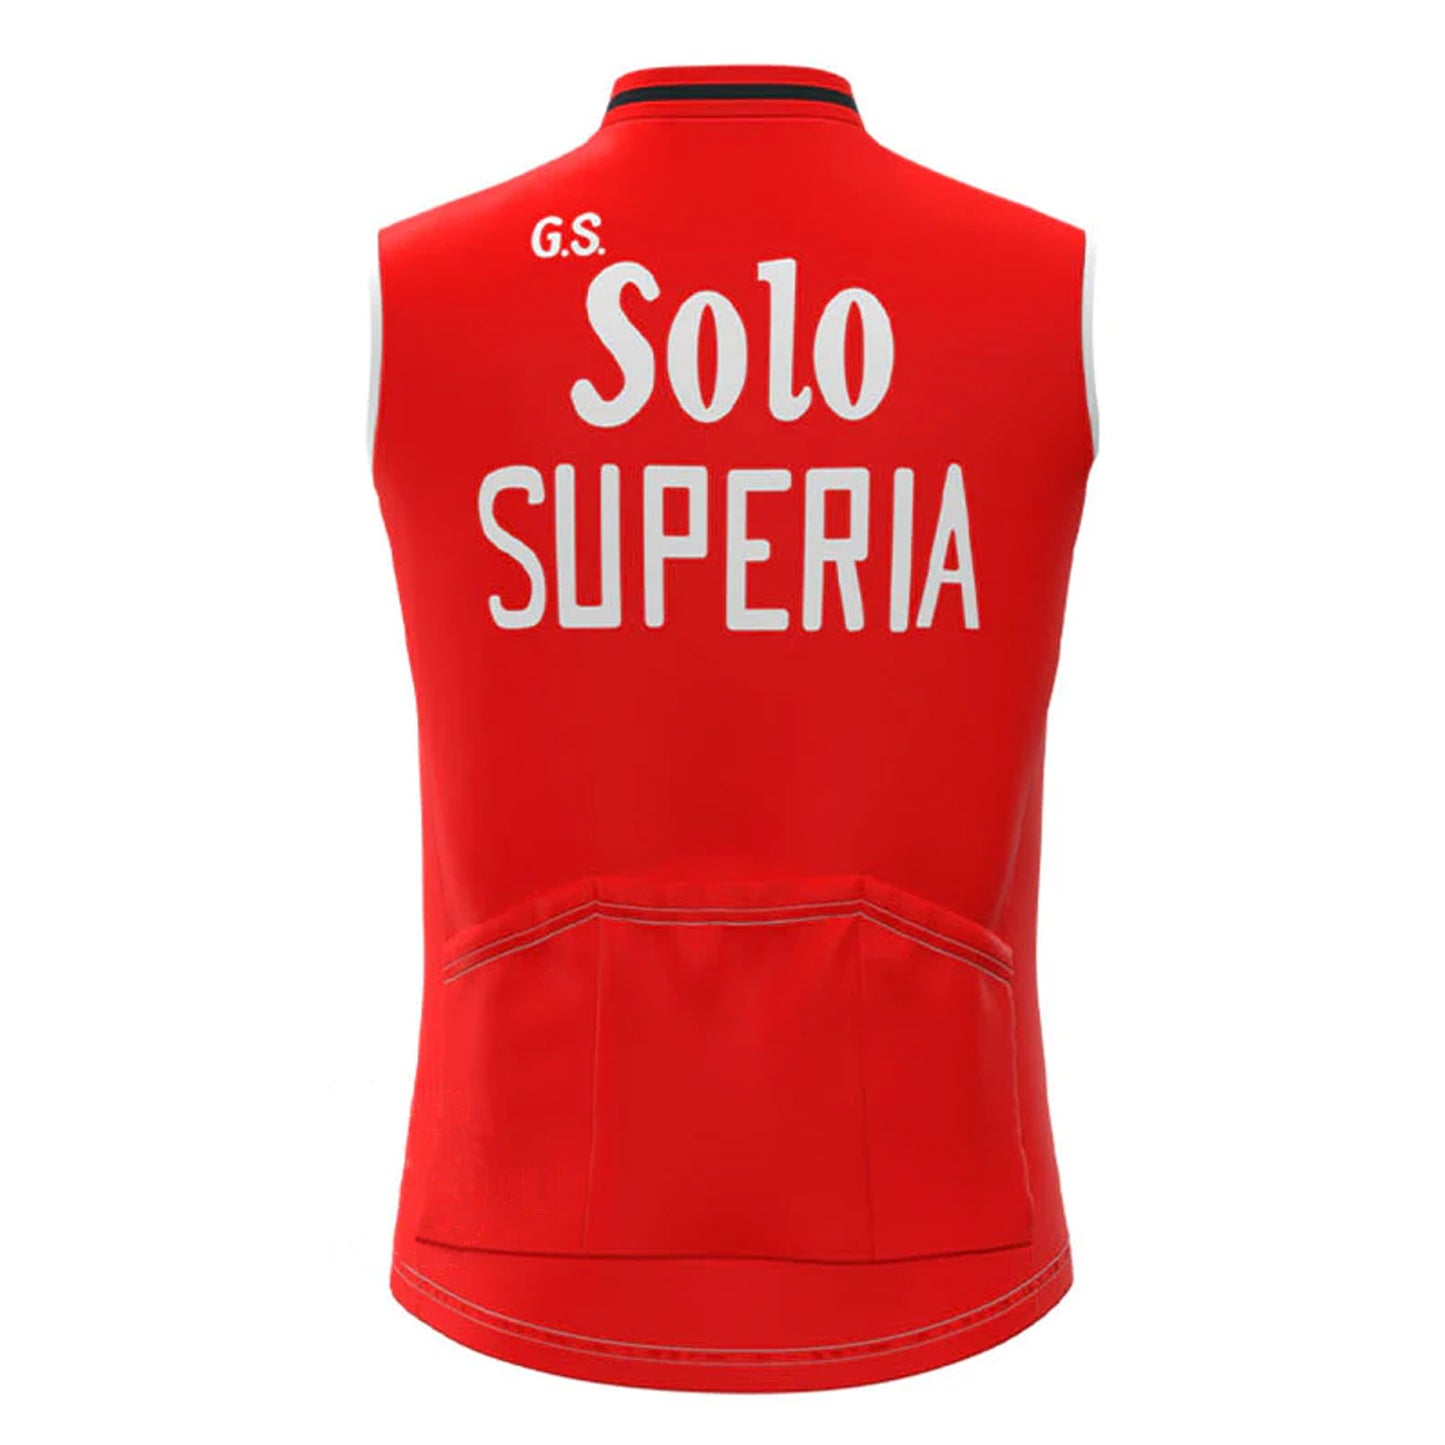 Solo Superia Red Retro MTB Cycling Vest